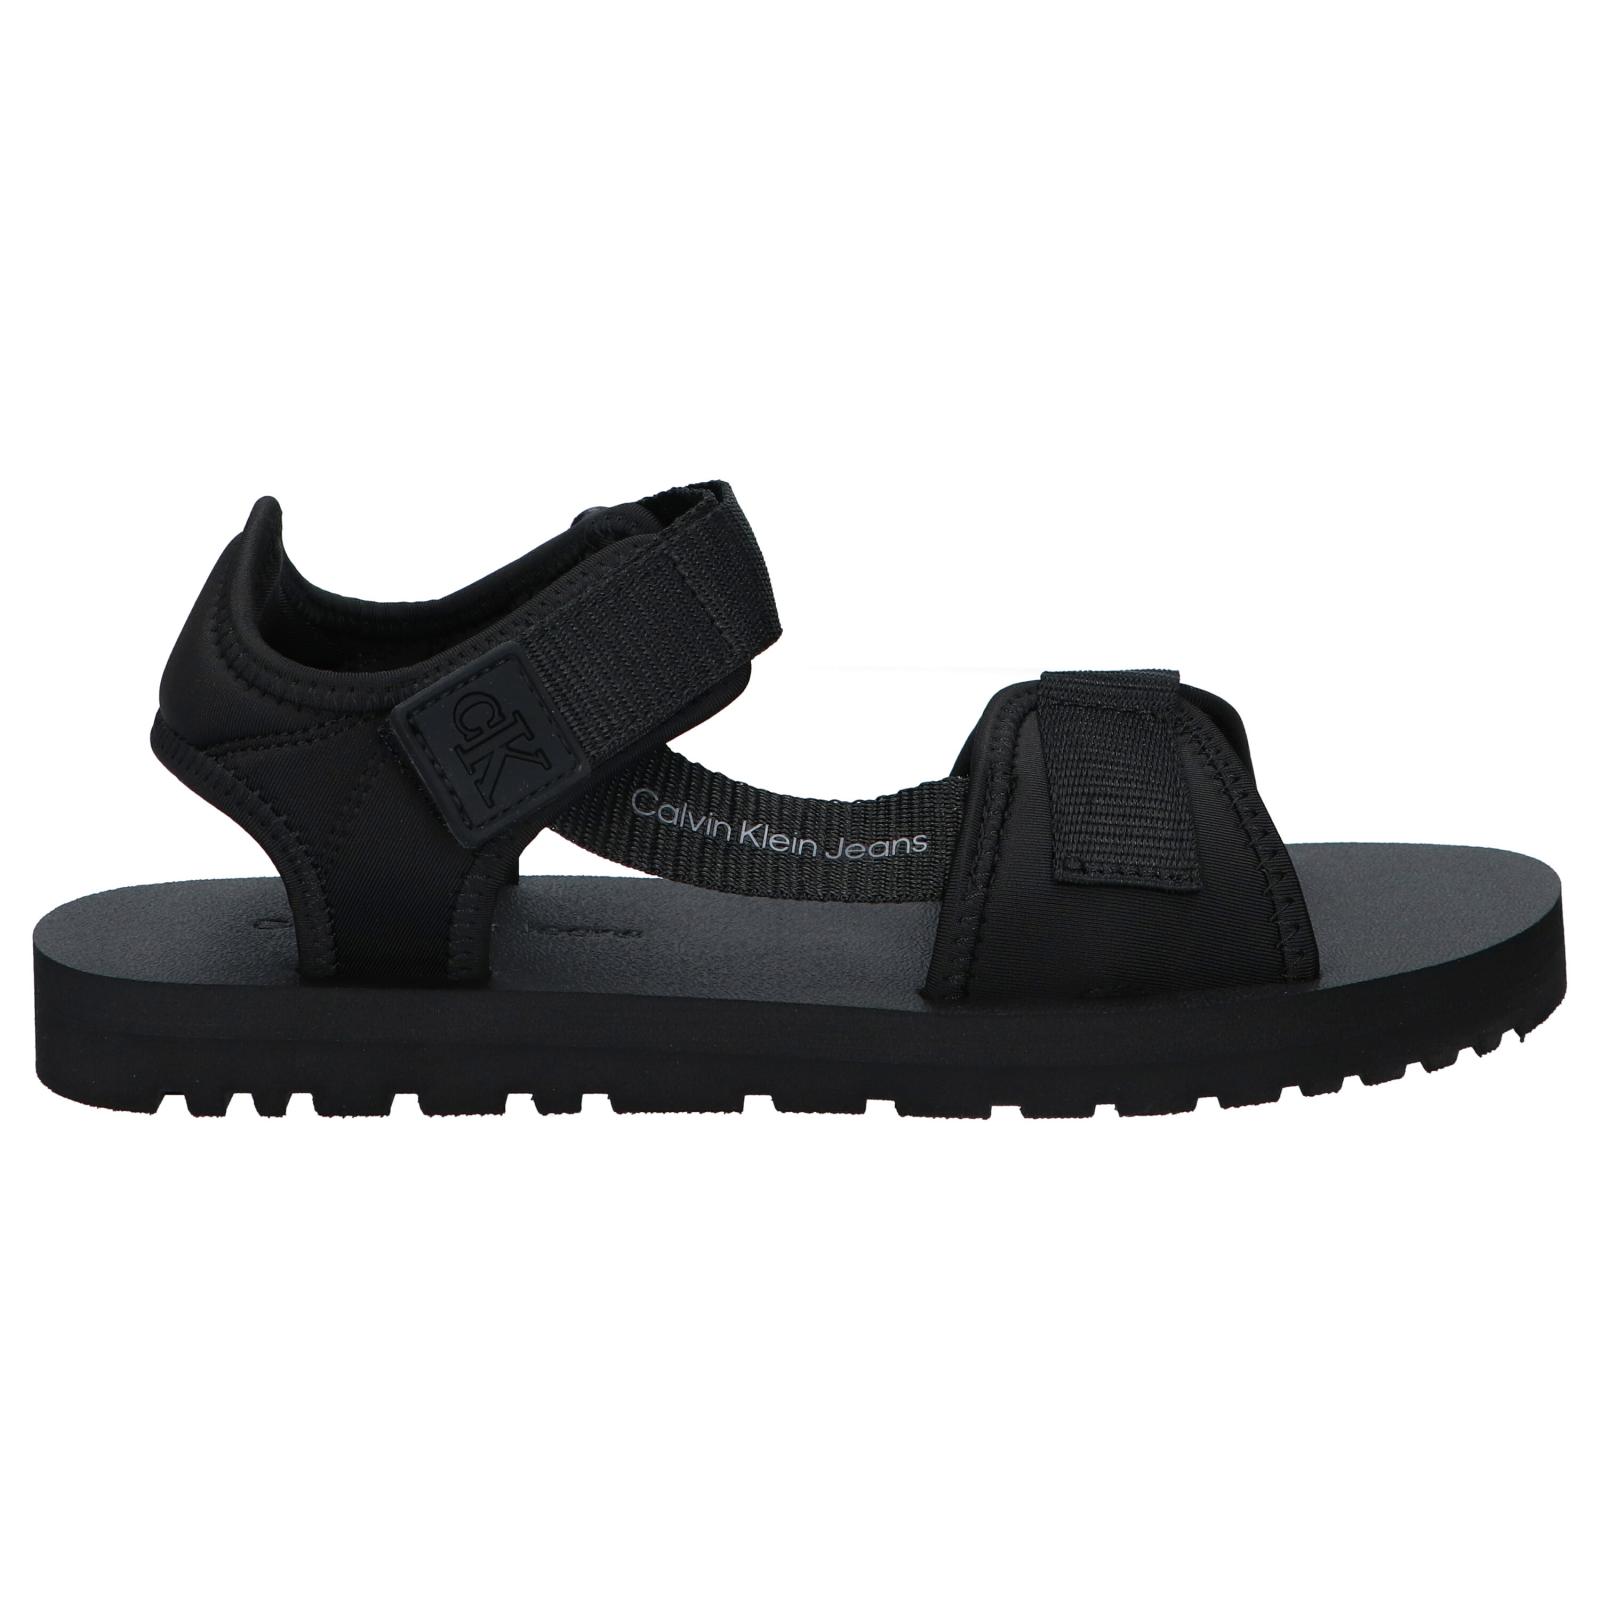  Streetwear - Sandalias negras para hombre y mujer, sandalias de  diseño de la marca SkullBoxx, sandalias negras con diseño blanco y gris,  sandalias de plataforma de 1 pulgada